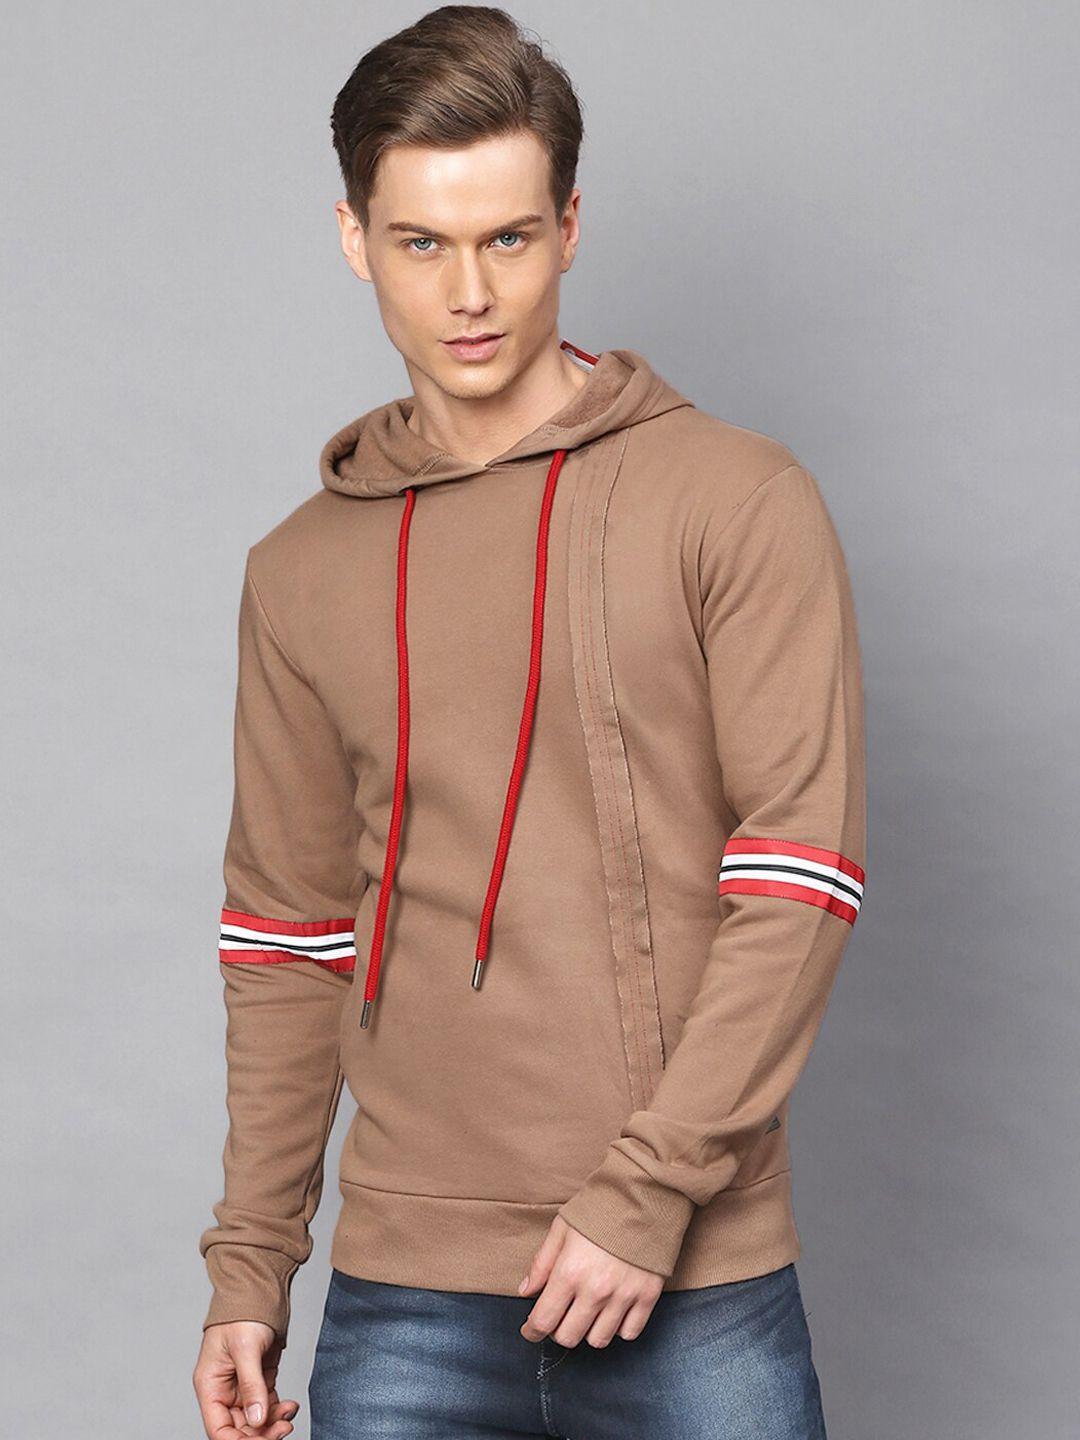 campus-sutra-men-brown-hooded-sweatshirt